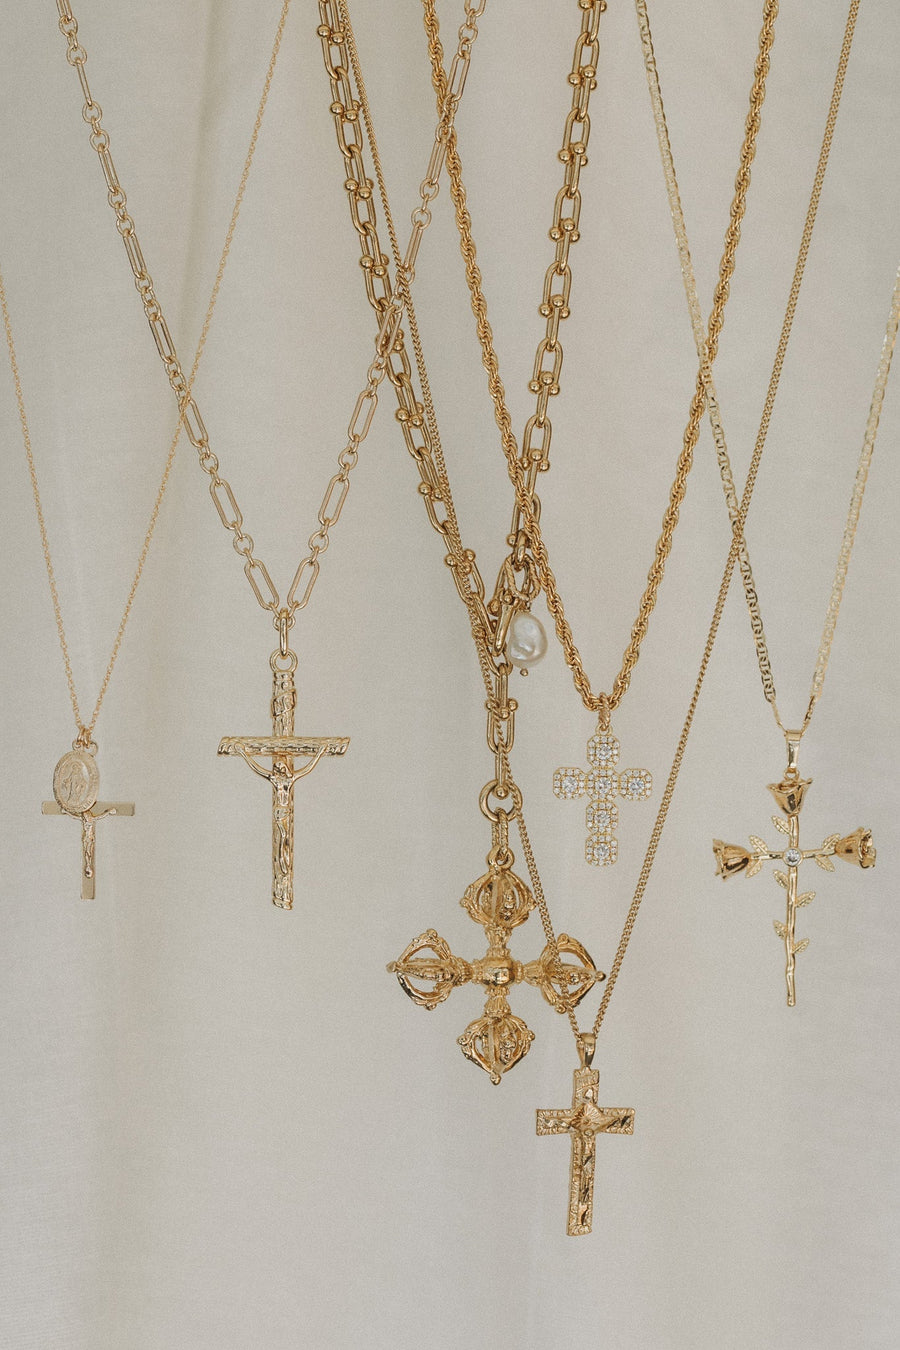 Dona Italia Jewelry Gold / 16 Inches Nelli Cross Necklace